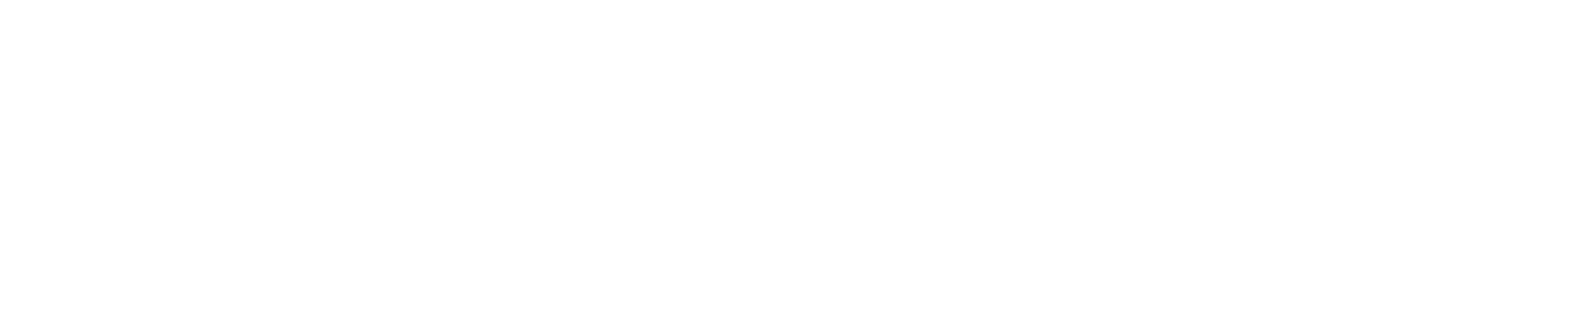 Valkyrie ETF logo large for dark backgrounds (transparent PNG)